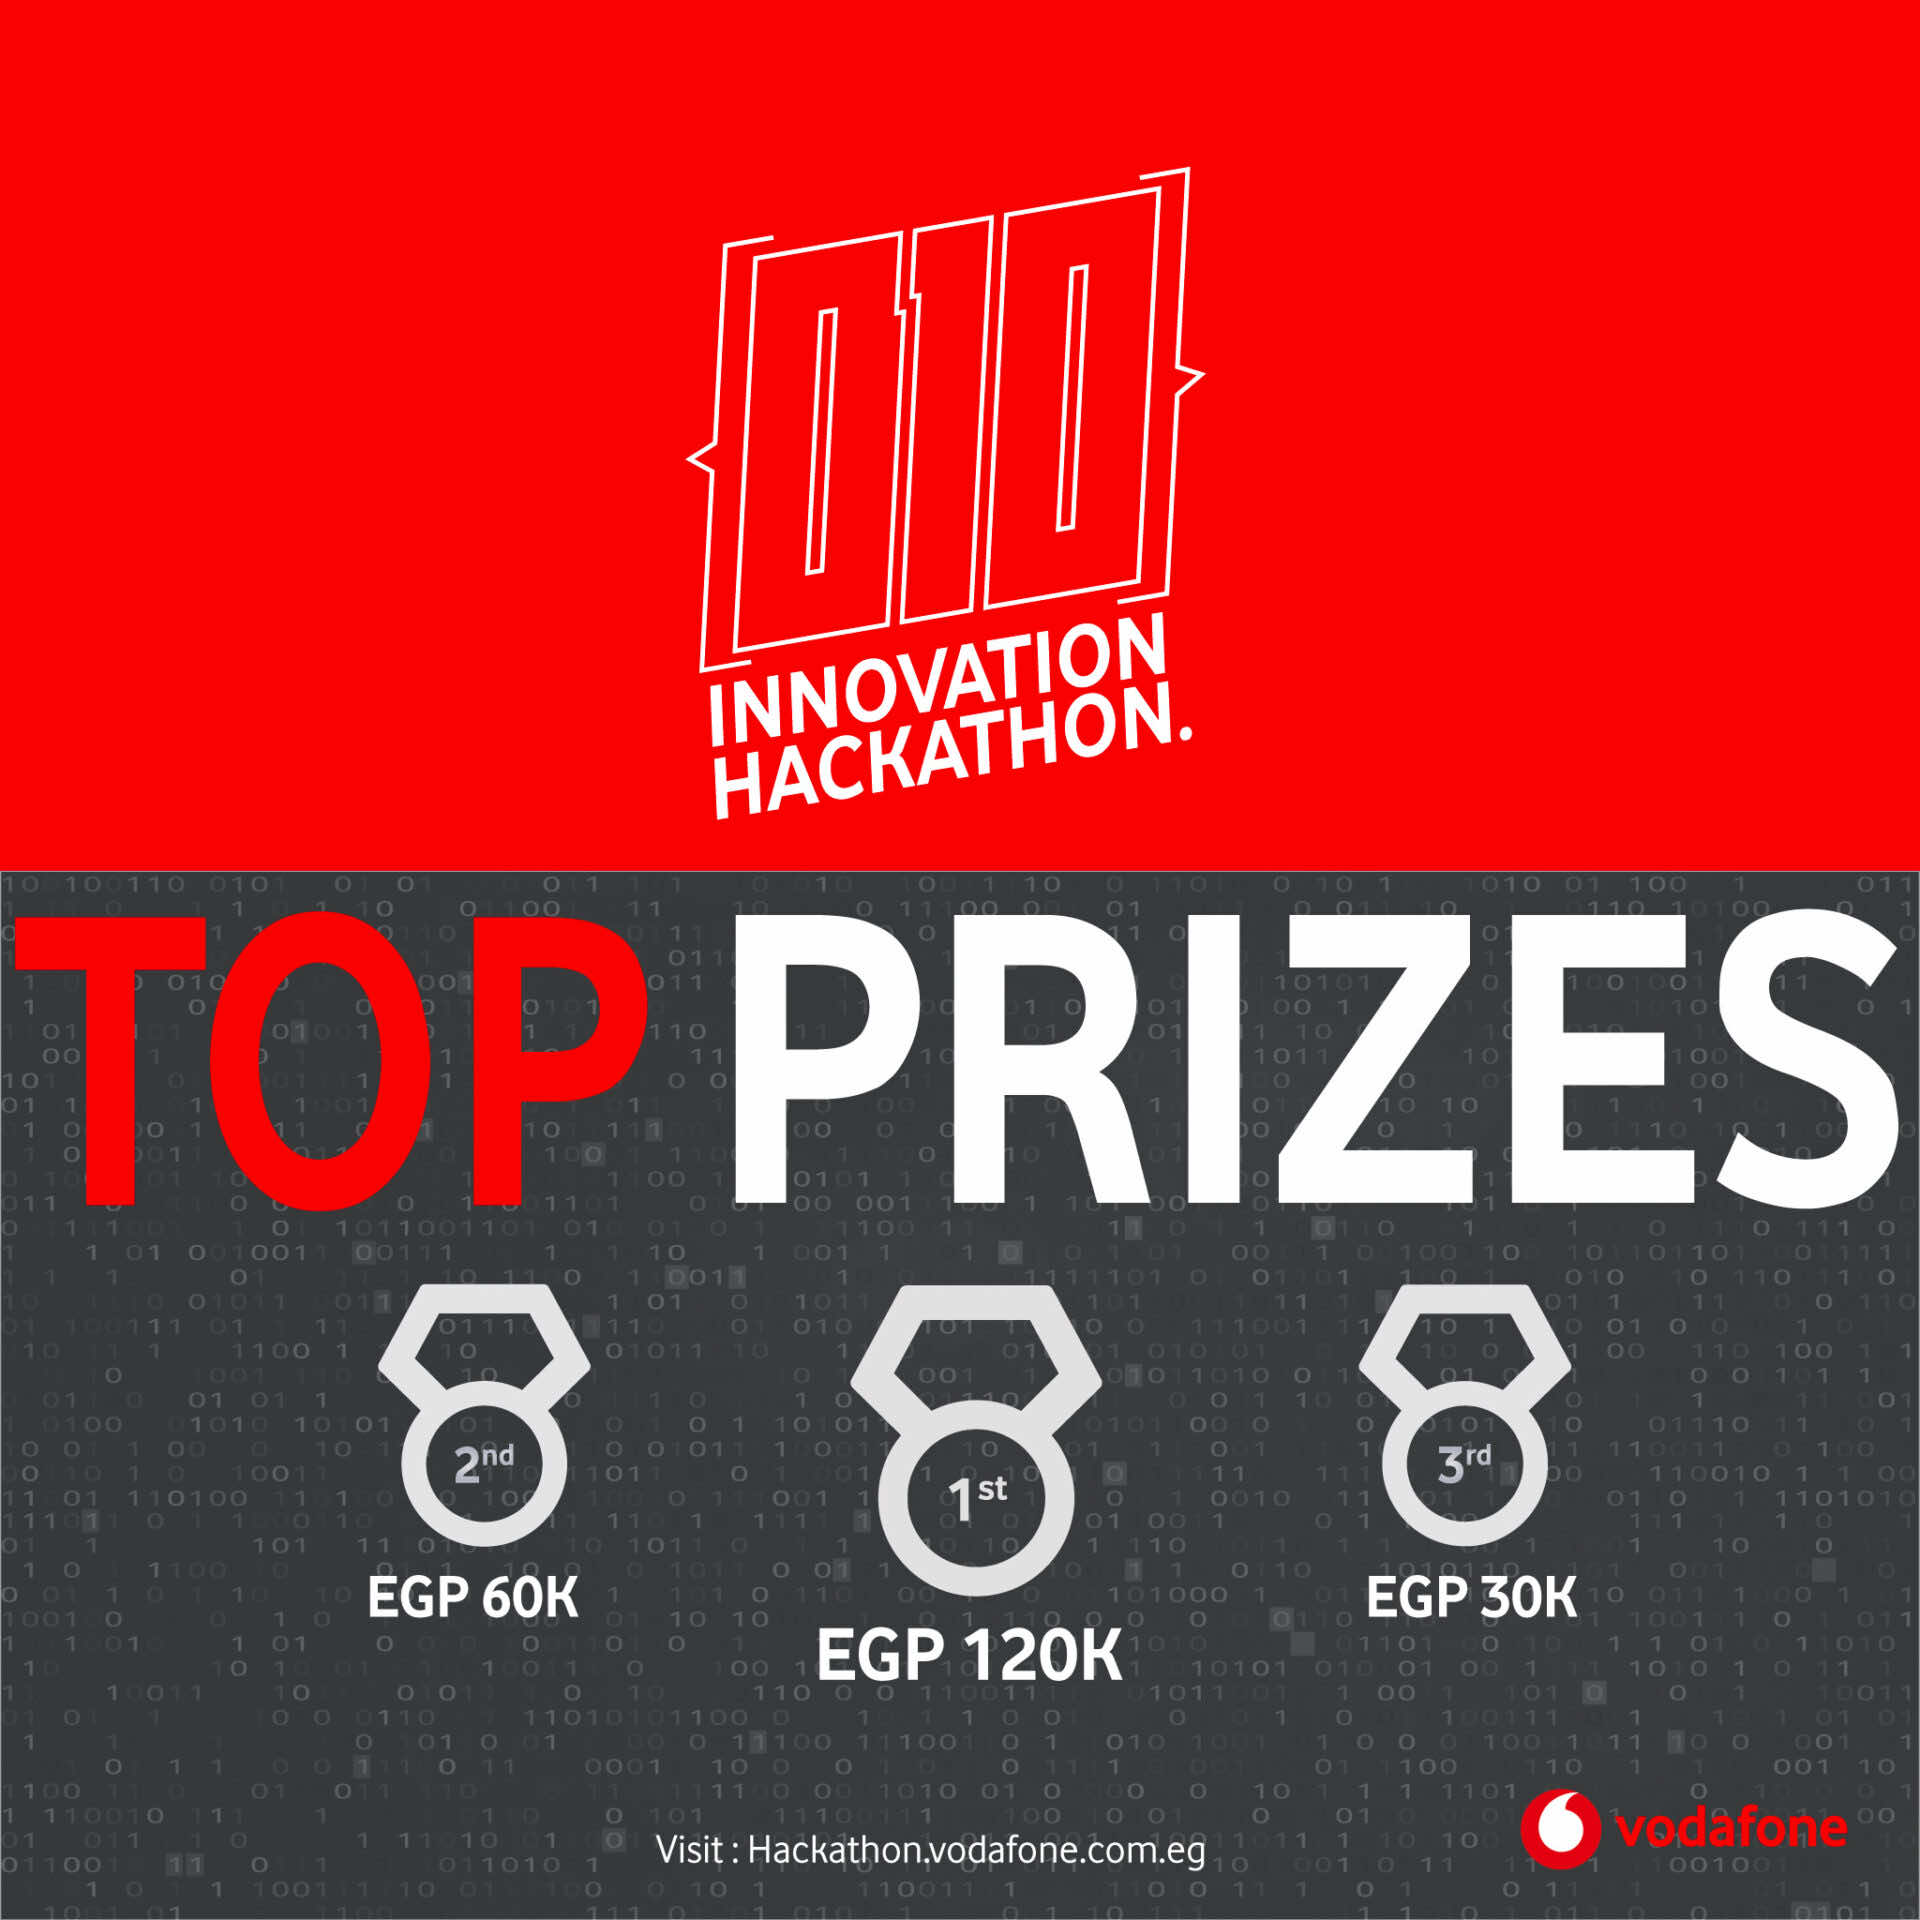 Vodafone Egypt Innovation Hackathon prizes